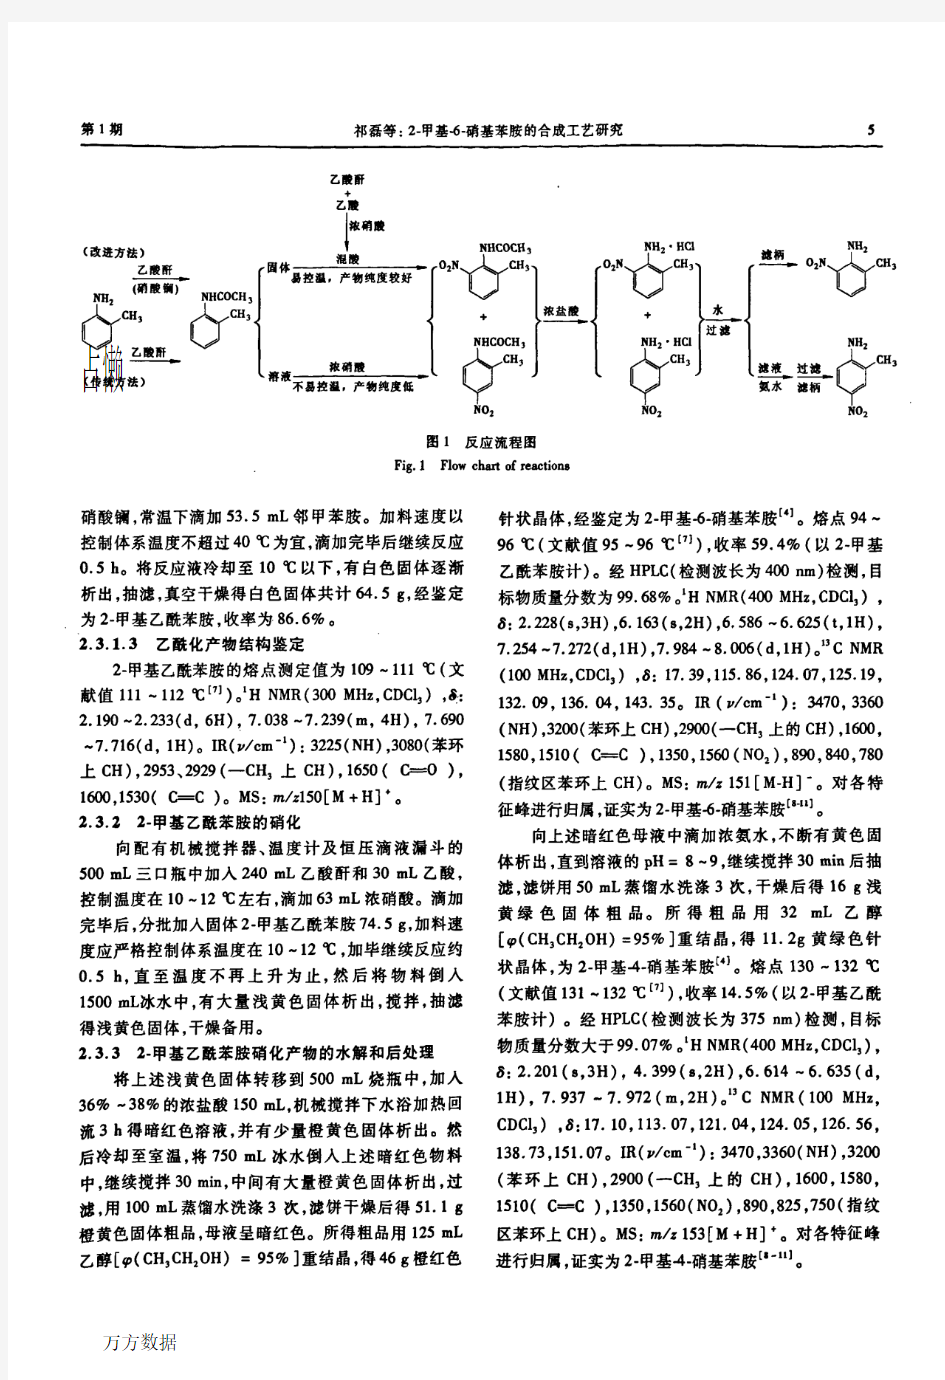 2-甲基-6-硝基苯胺的合成工艺研究[1]